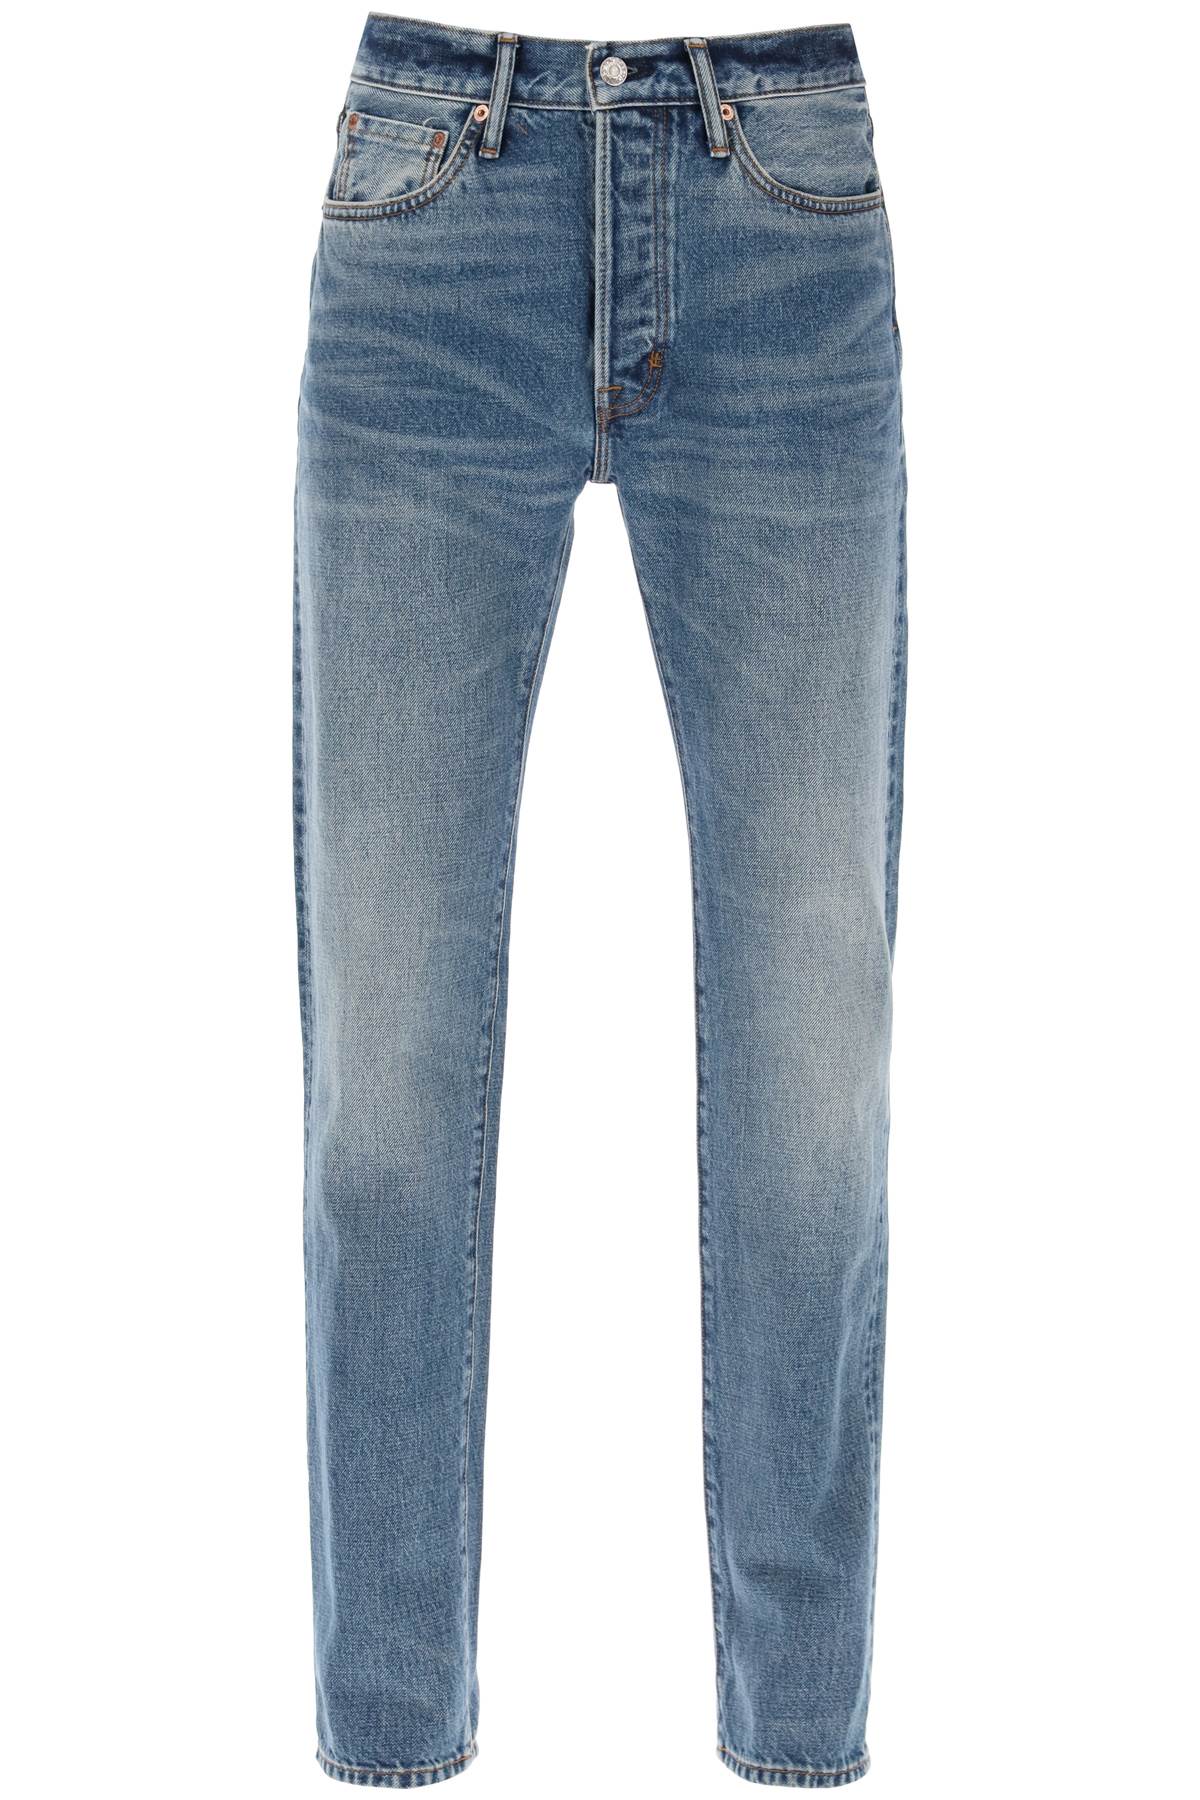 Tom ford regular fit jeans-0